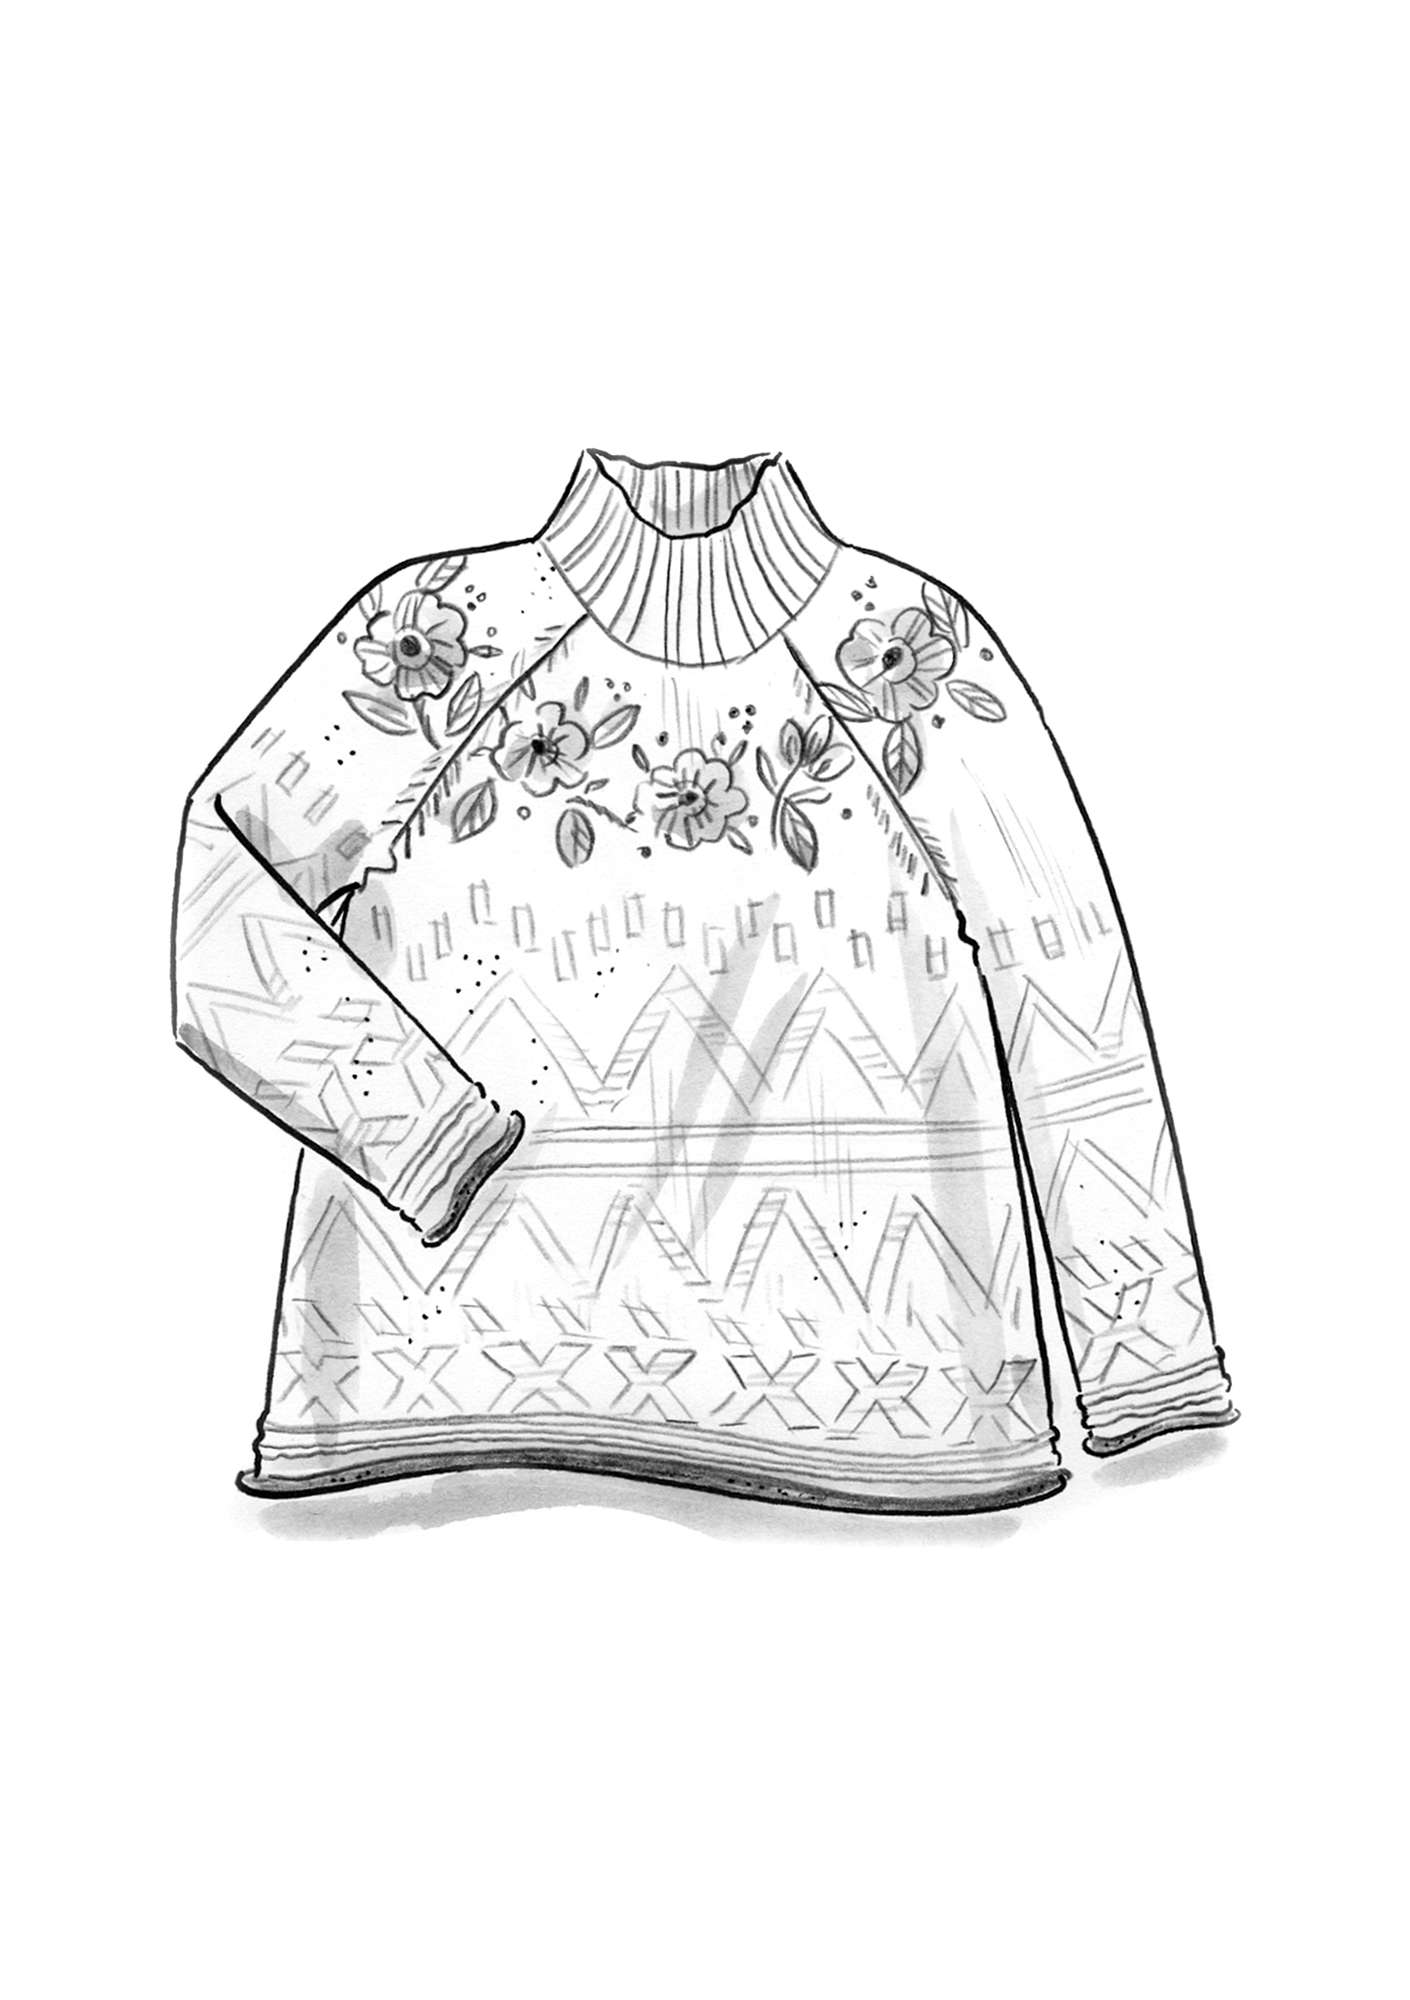 Handbestickter Pullover „Margrethe“ aus Wolle pfauengrün